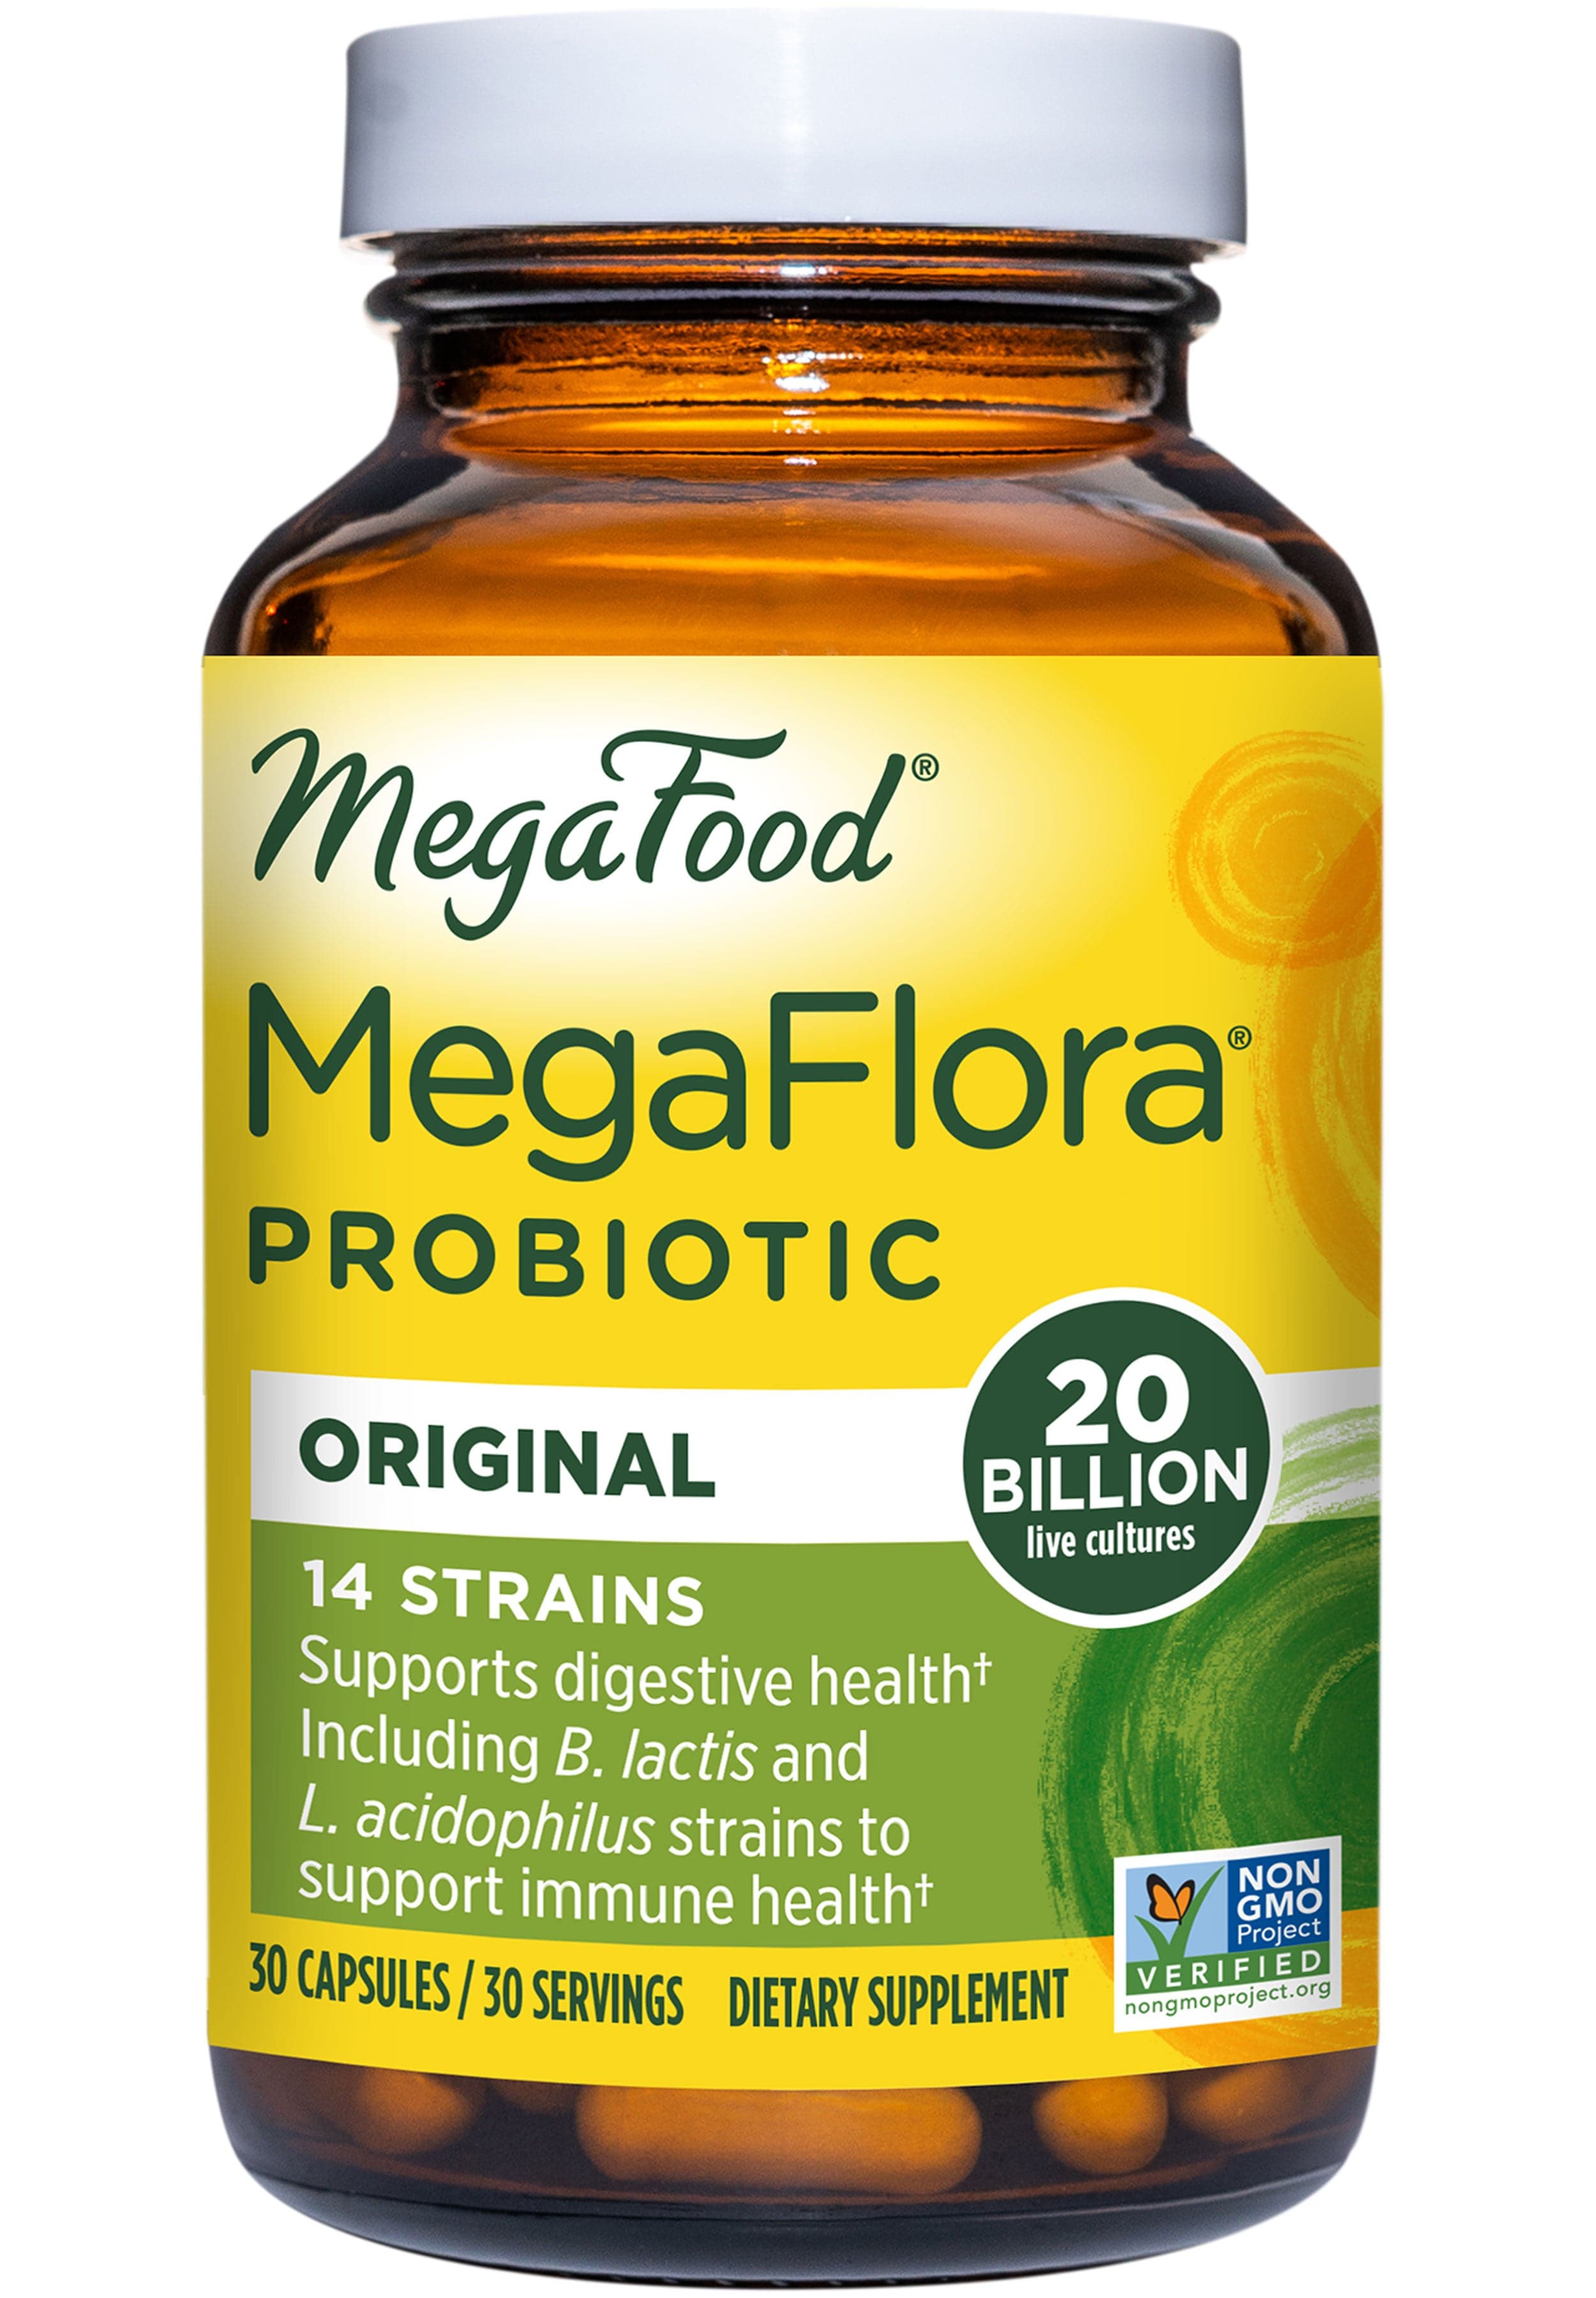 MegaFood MegaFlora Probiotic Original